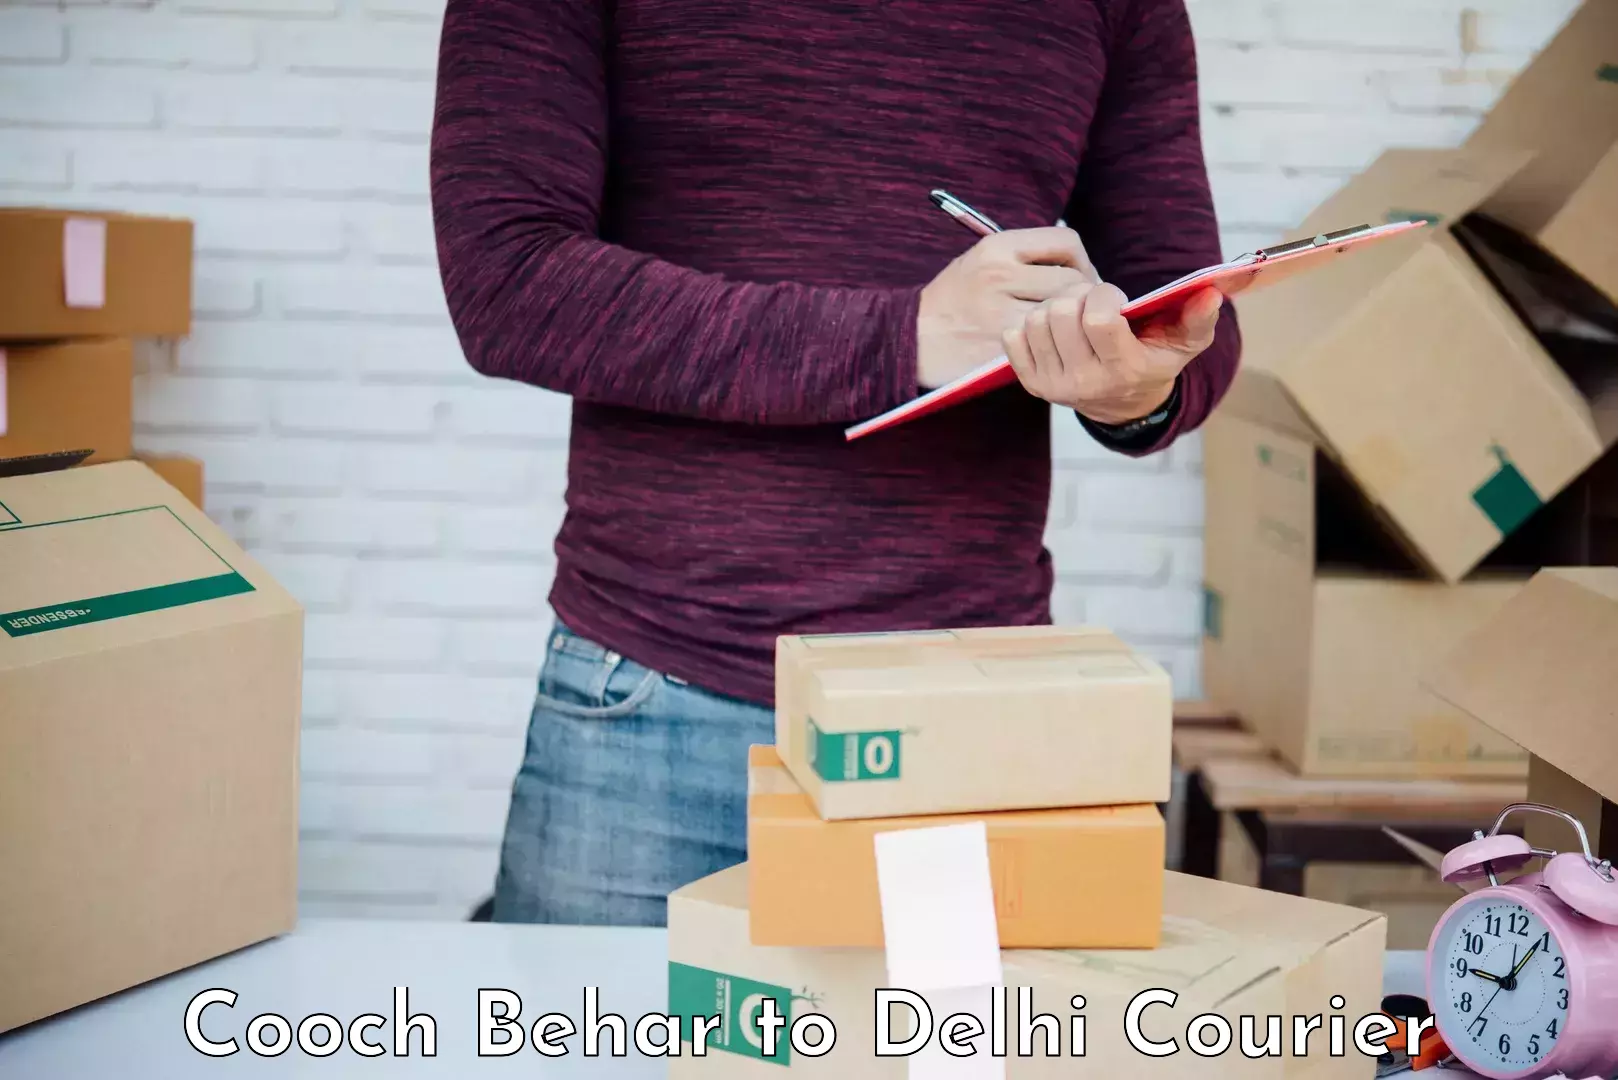 Skilled furniture transport Cooch Behar to Delhi